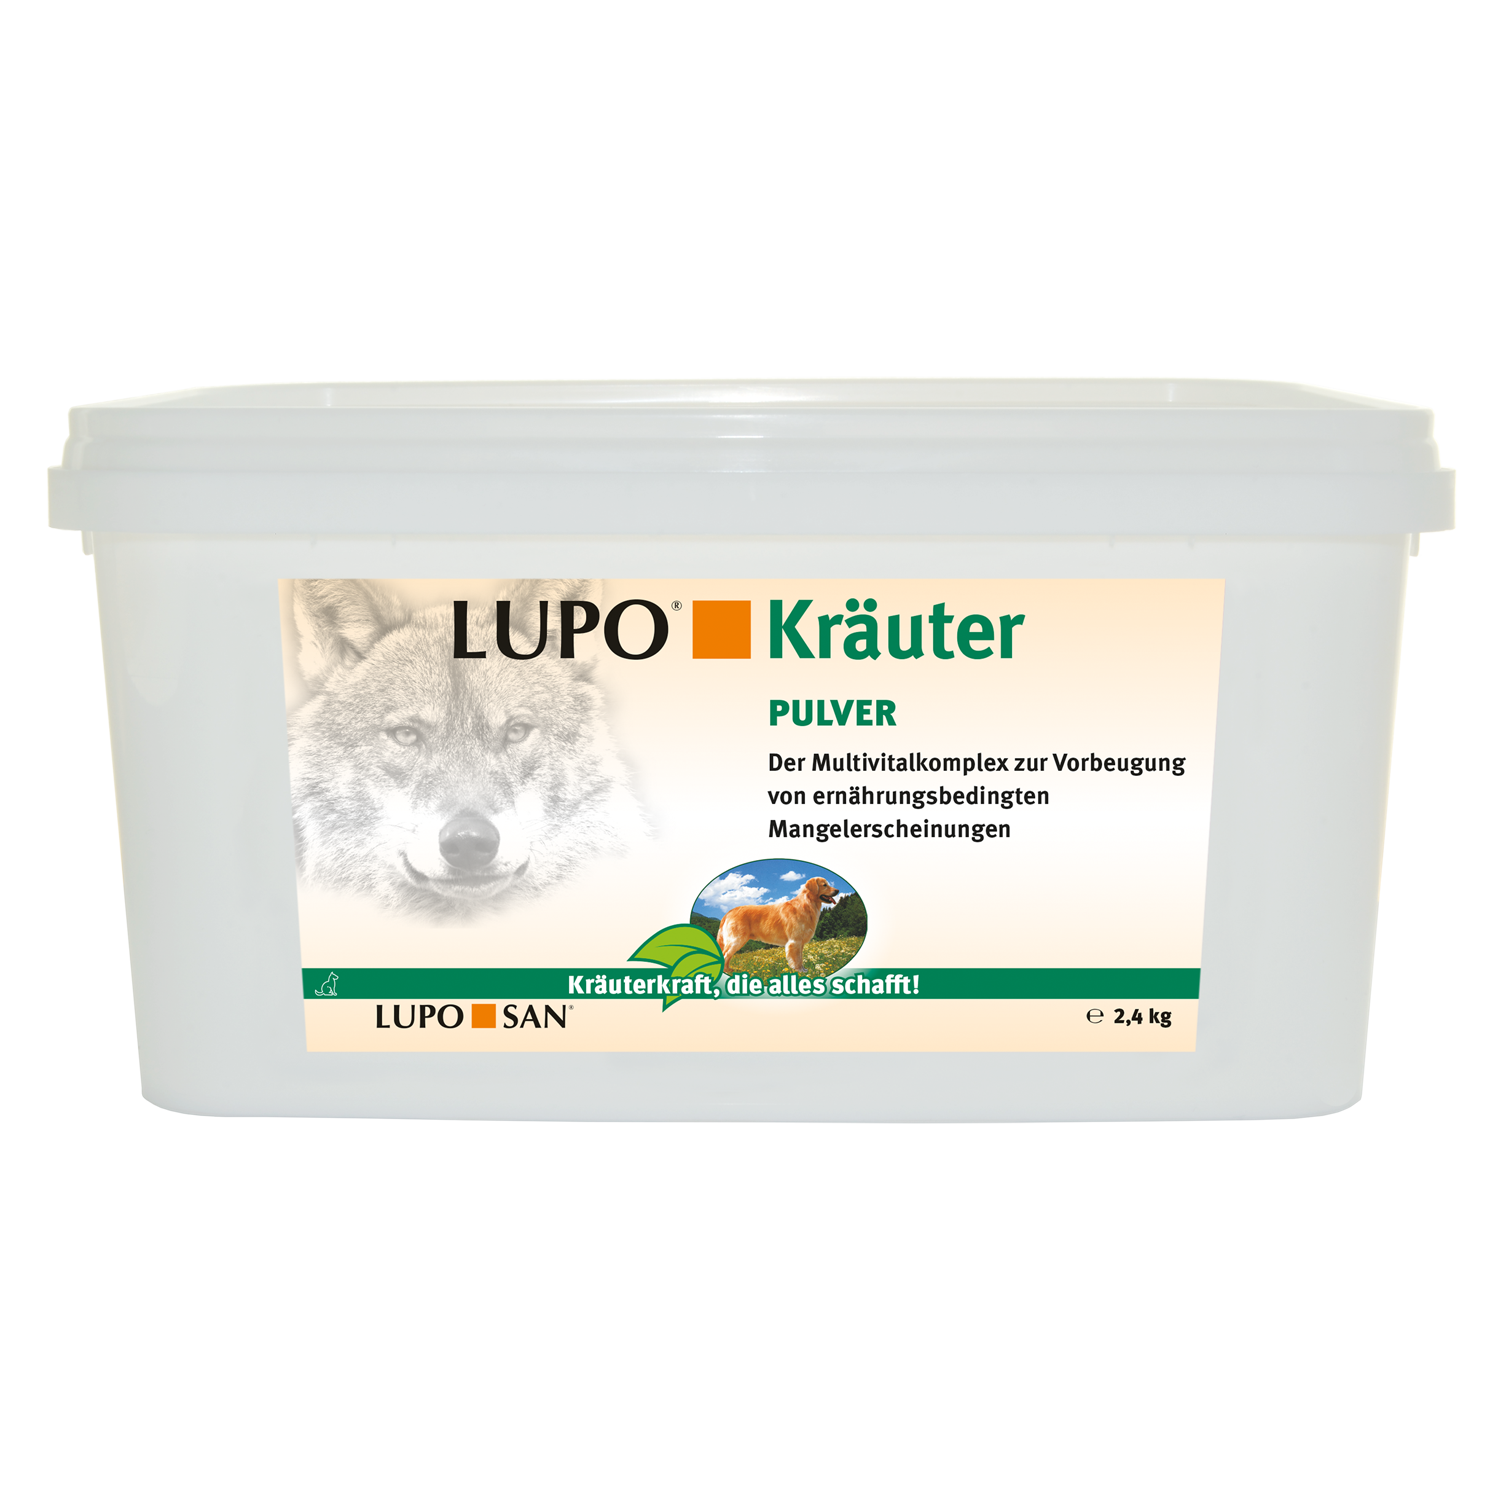 LUPO Kräuter Pulver 2,4 kg Eimer